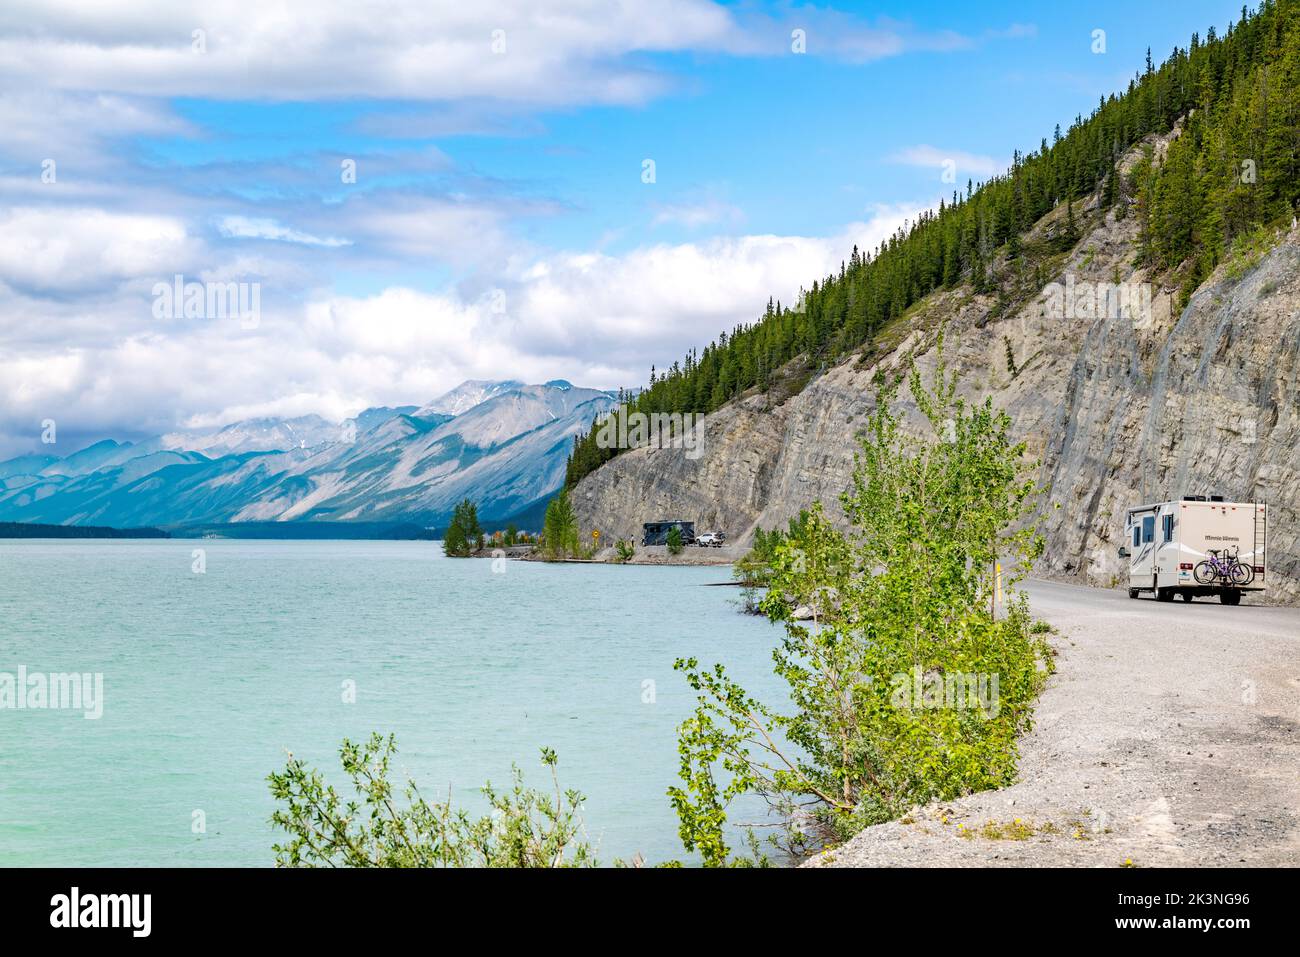 Il camper percorre l'autostrada dell'Alaska lungo il lago Muncho, circondato dalle Montagne Rocciose canadesi; dalla Columbia Britannica; dal Canada Foto Stock